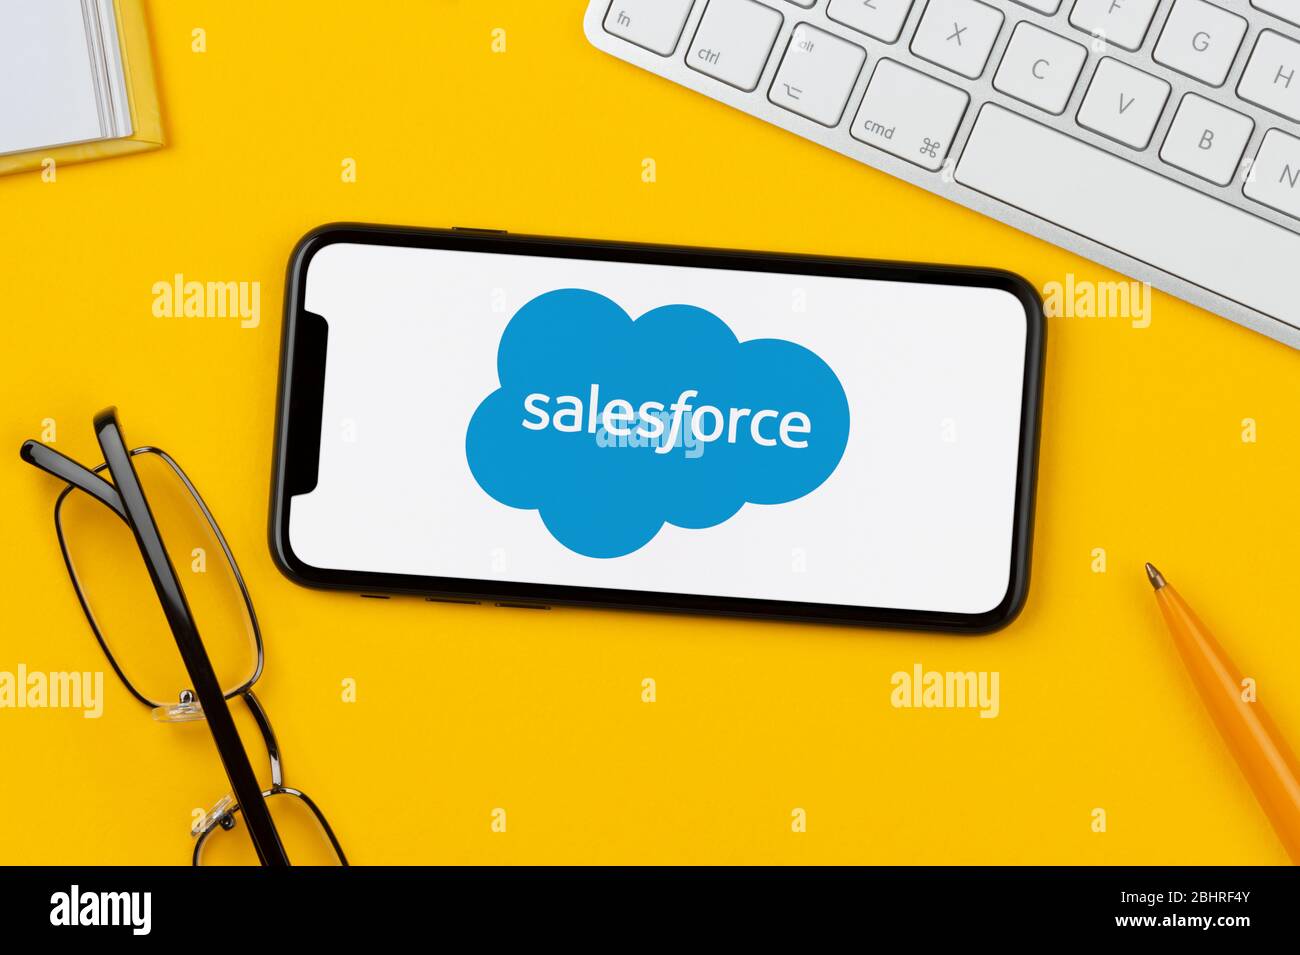 Ein Smartphone mit dem Salesforce-Logo liegt auf einem gelben Hintergrund zusammen mit Tastatur, Brille, Stift und Buch (nur redaktionelle Verwendung). Stockfoto